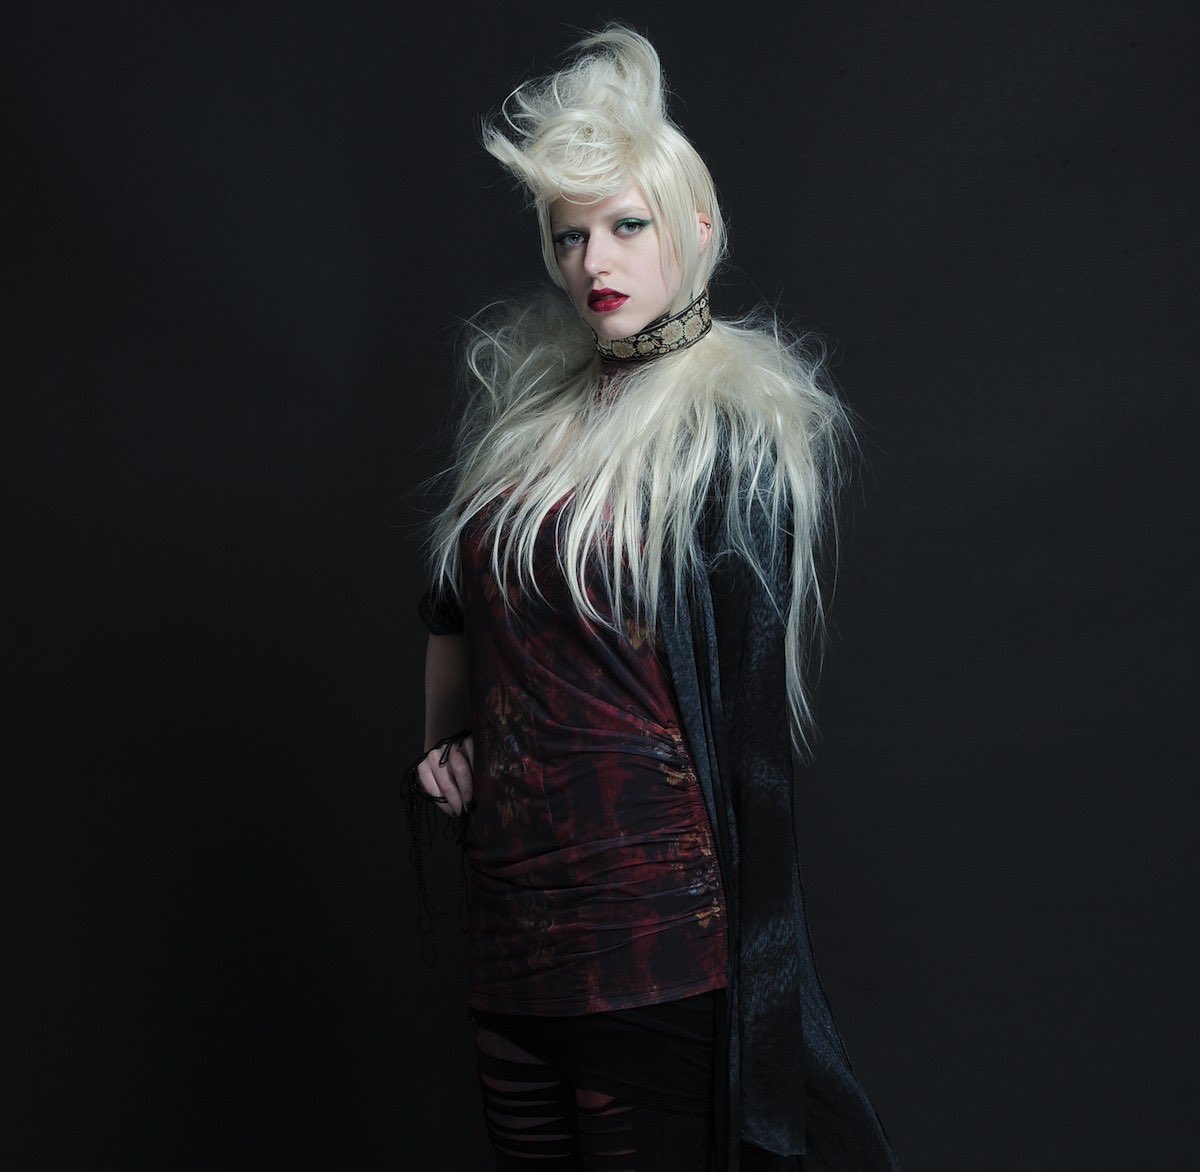 【h.NAOTO GOTH】 shop.hnaoto.com #y2k #fashion #punk #lolita #y2kfashion #y2kstyle #y2kファッション #gothic #gothiclolita #goth